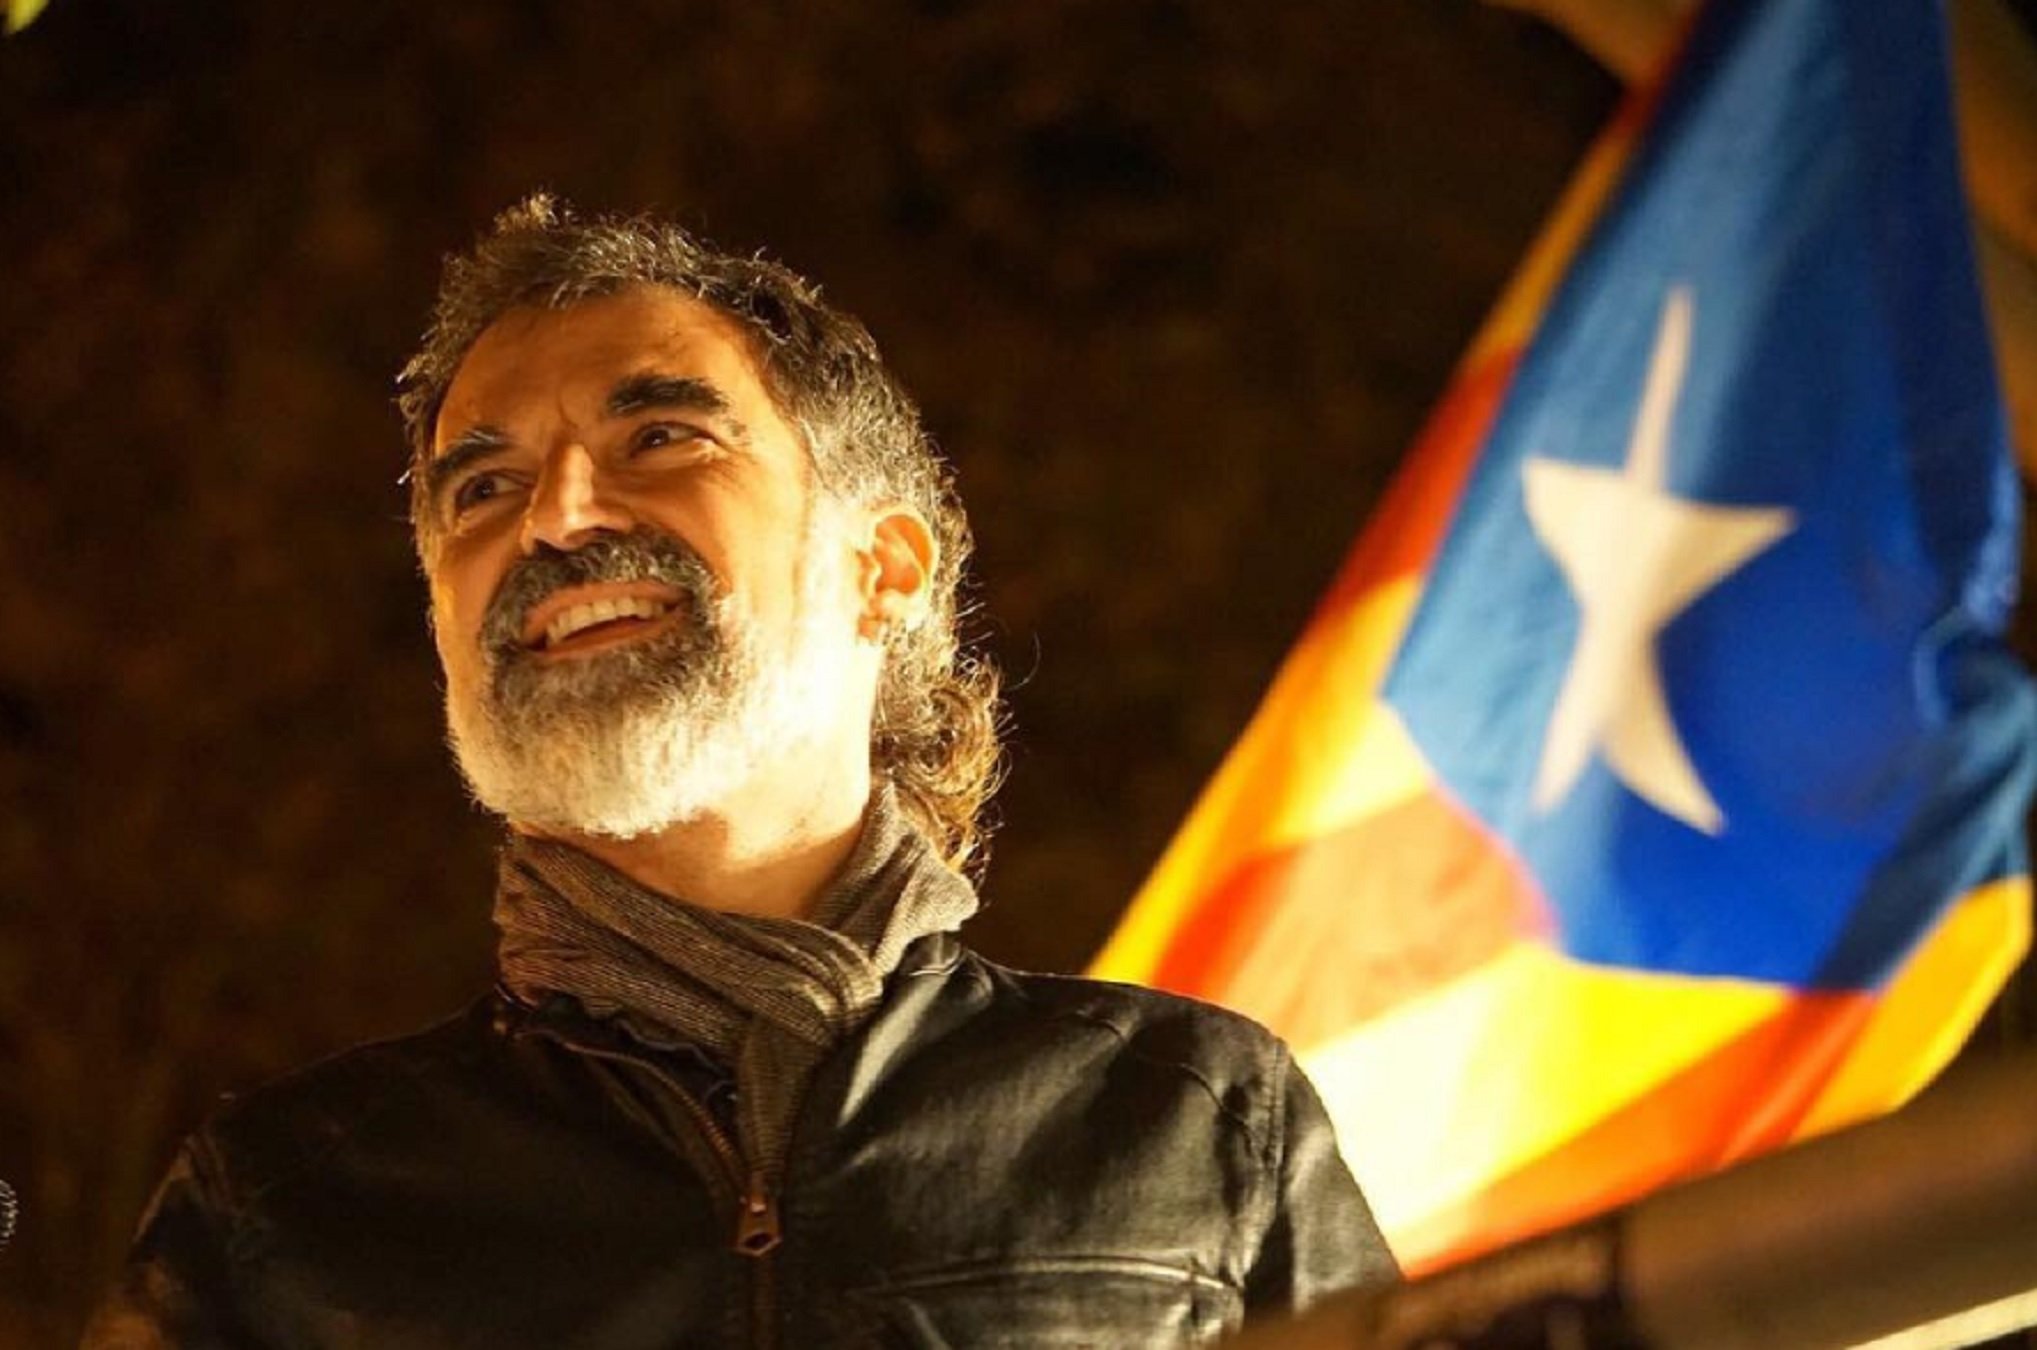 Sopapo de un presentador catalán a España felicitando a Cuixart, que cumple años